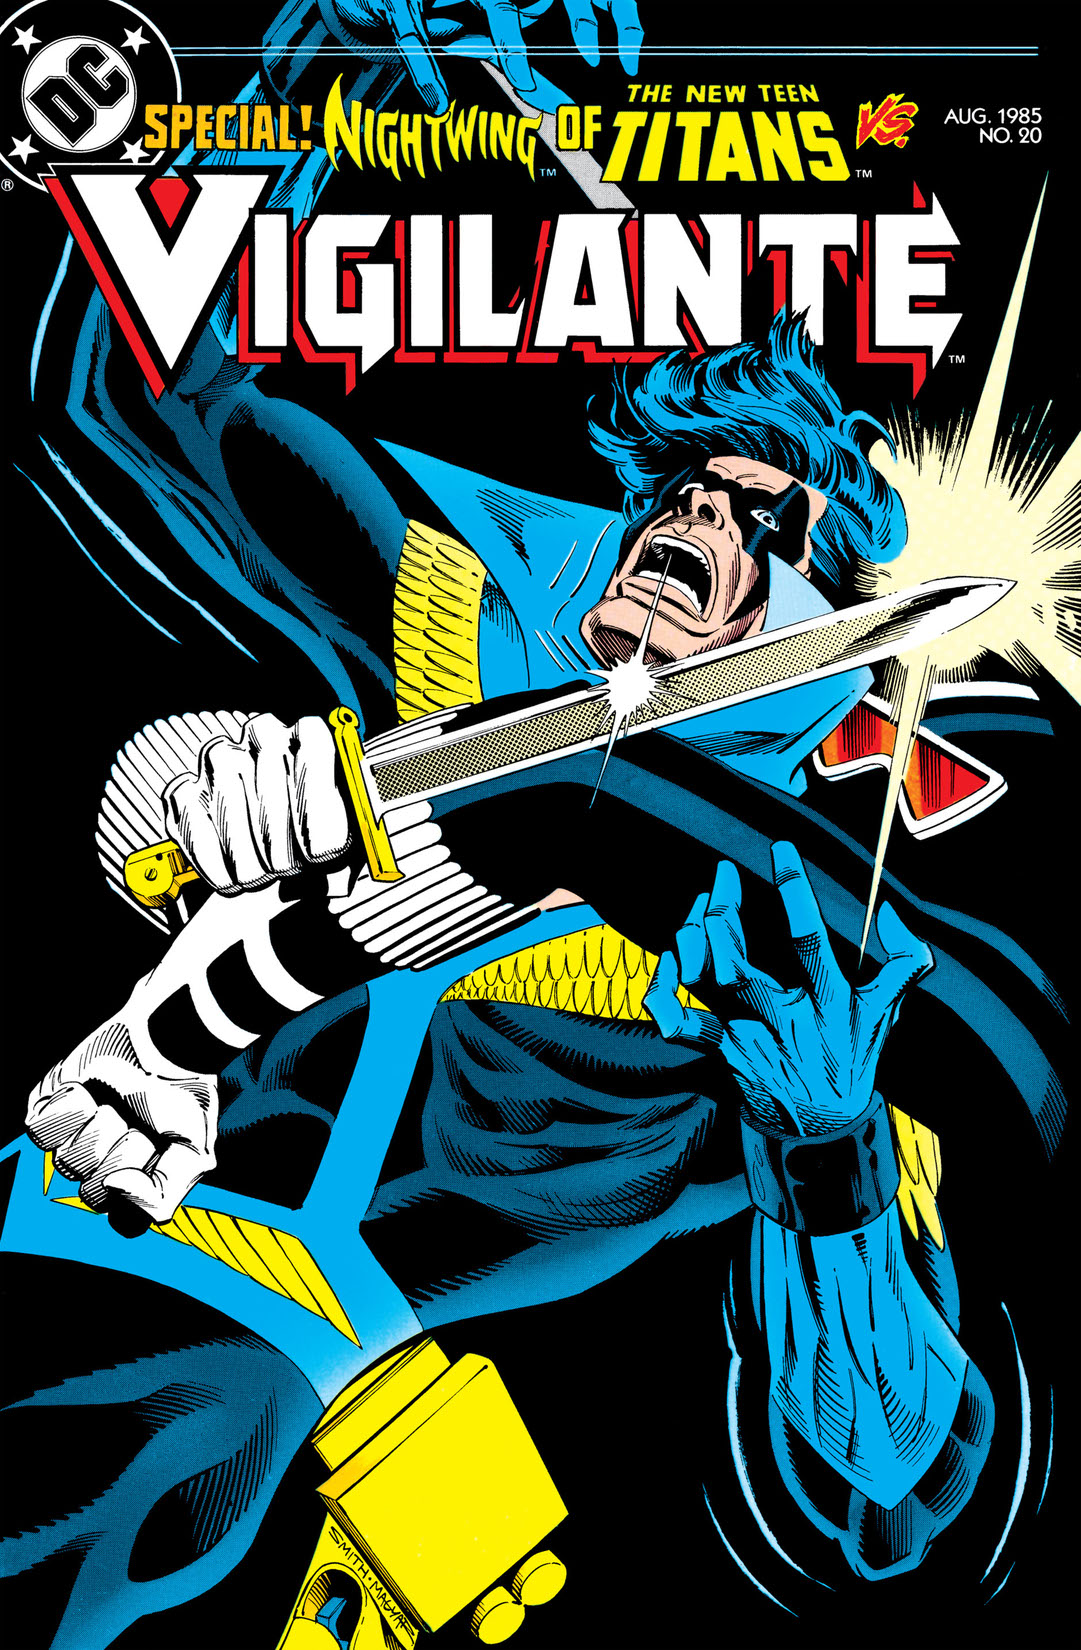 The Vigilante #20 preview images